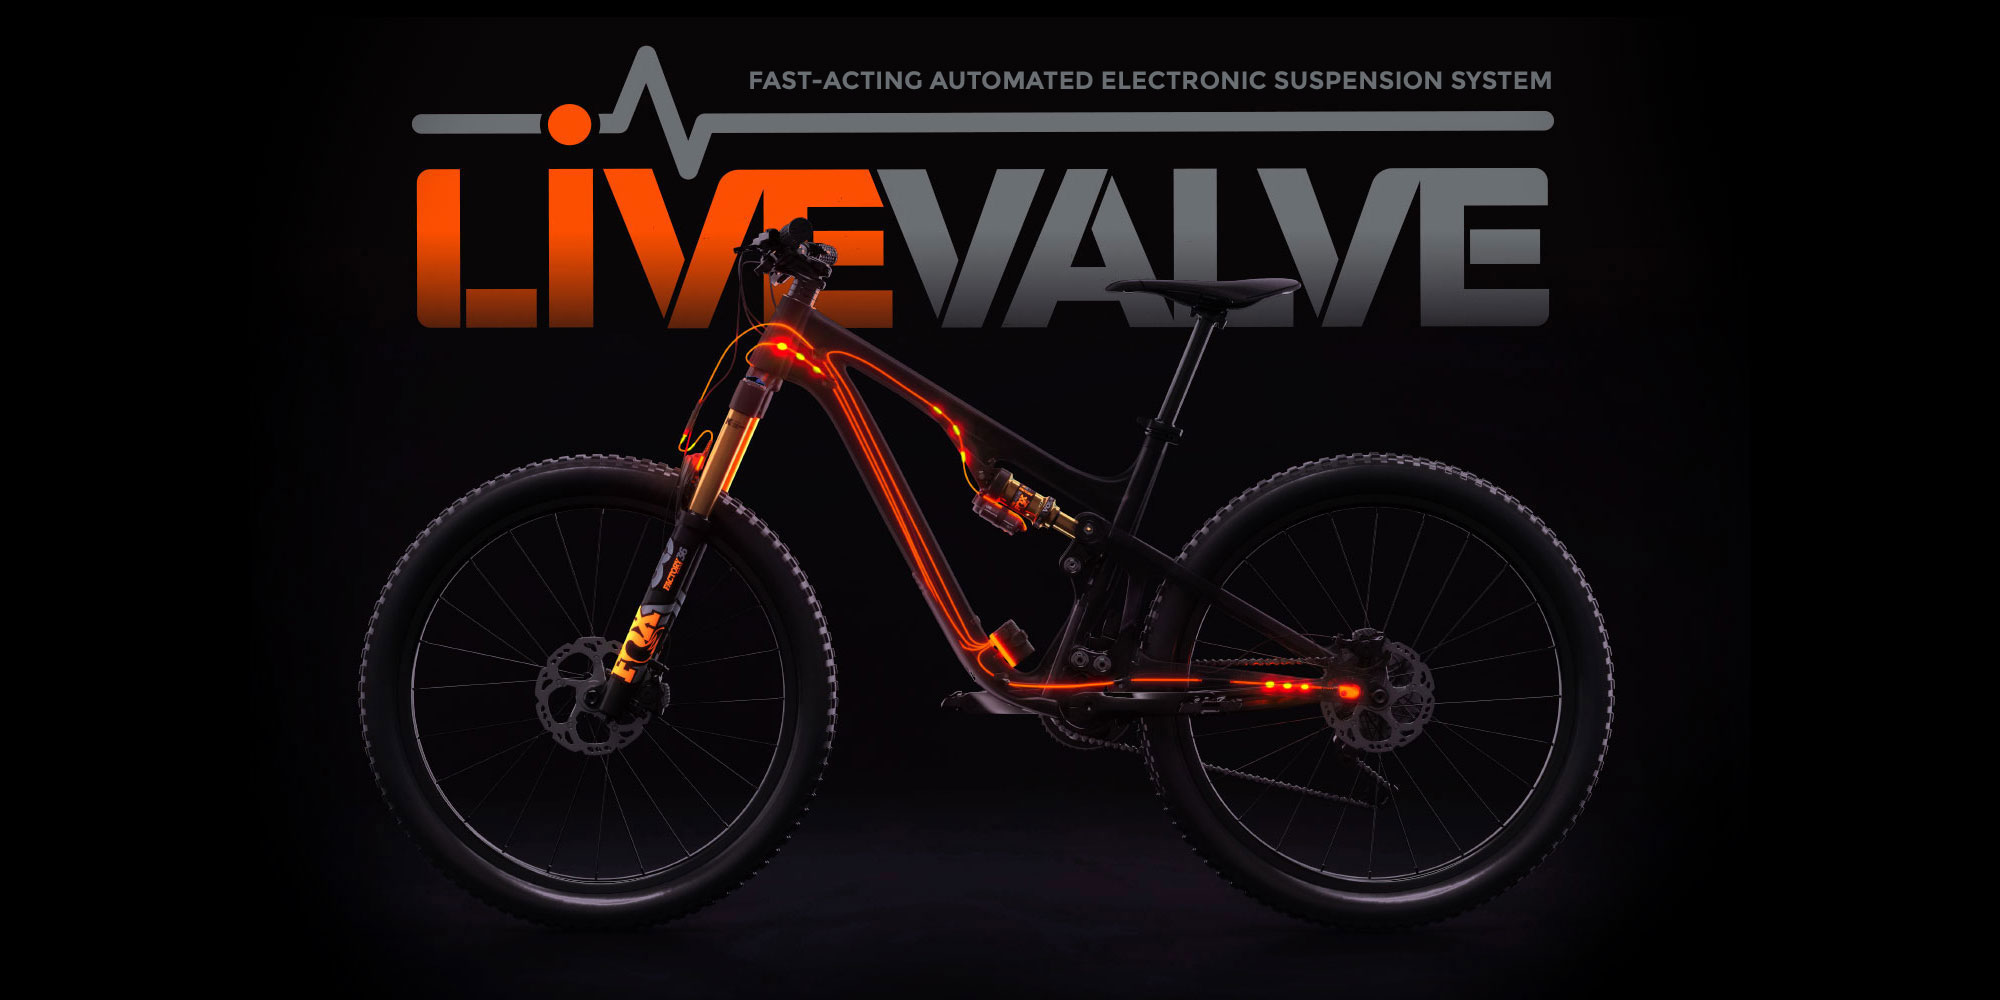 Live Valve bike